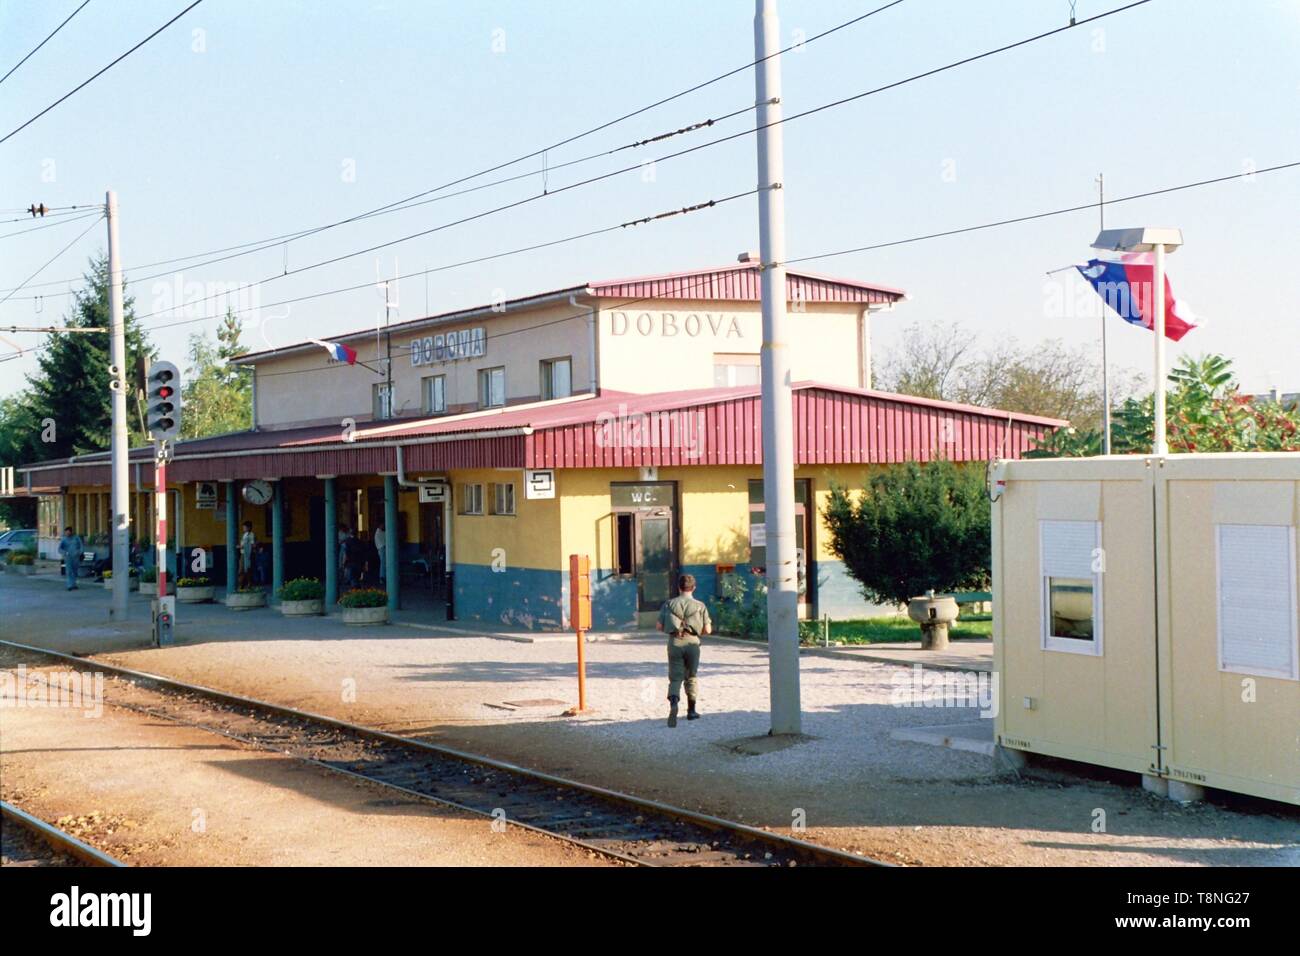 Dobova Bahnhof auf der Slowenisch-kroatisch Grenze dargestellt, während der Zerfall von Jugoslawien im Jahre 1991. Bild von Adam Alexander Stockfoto